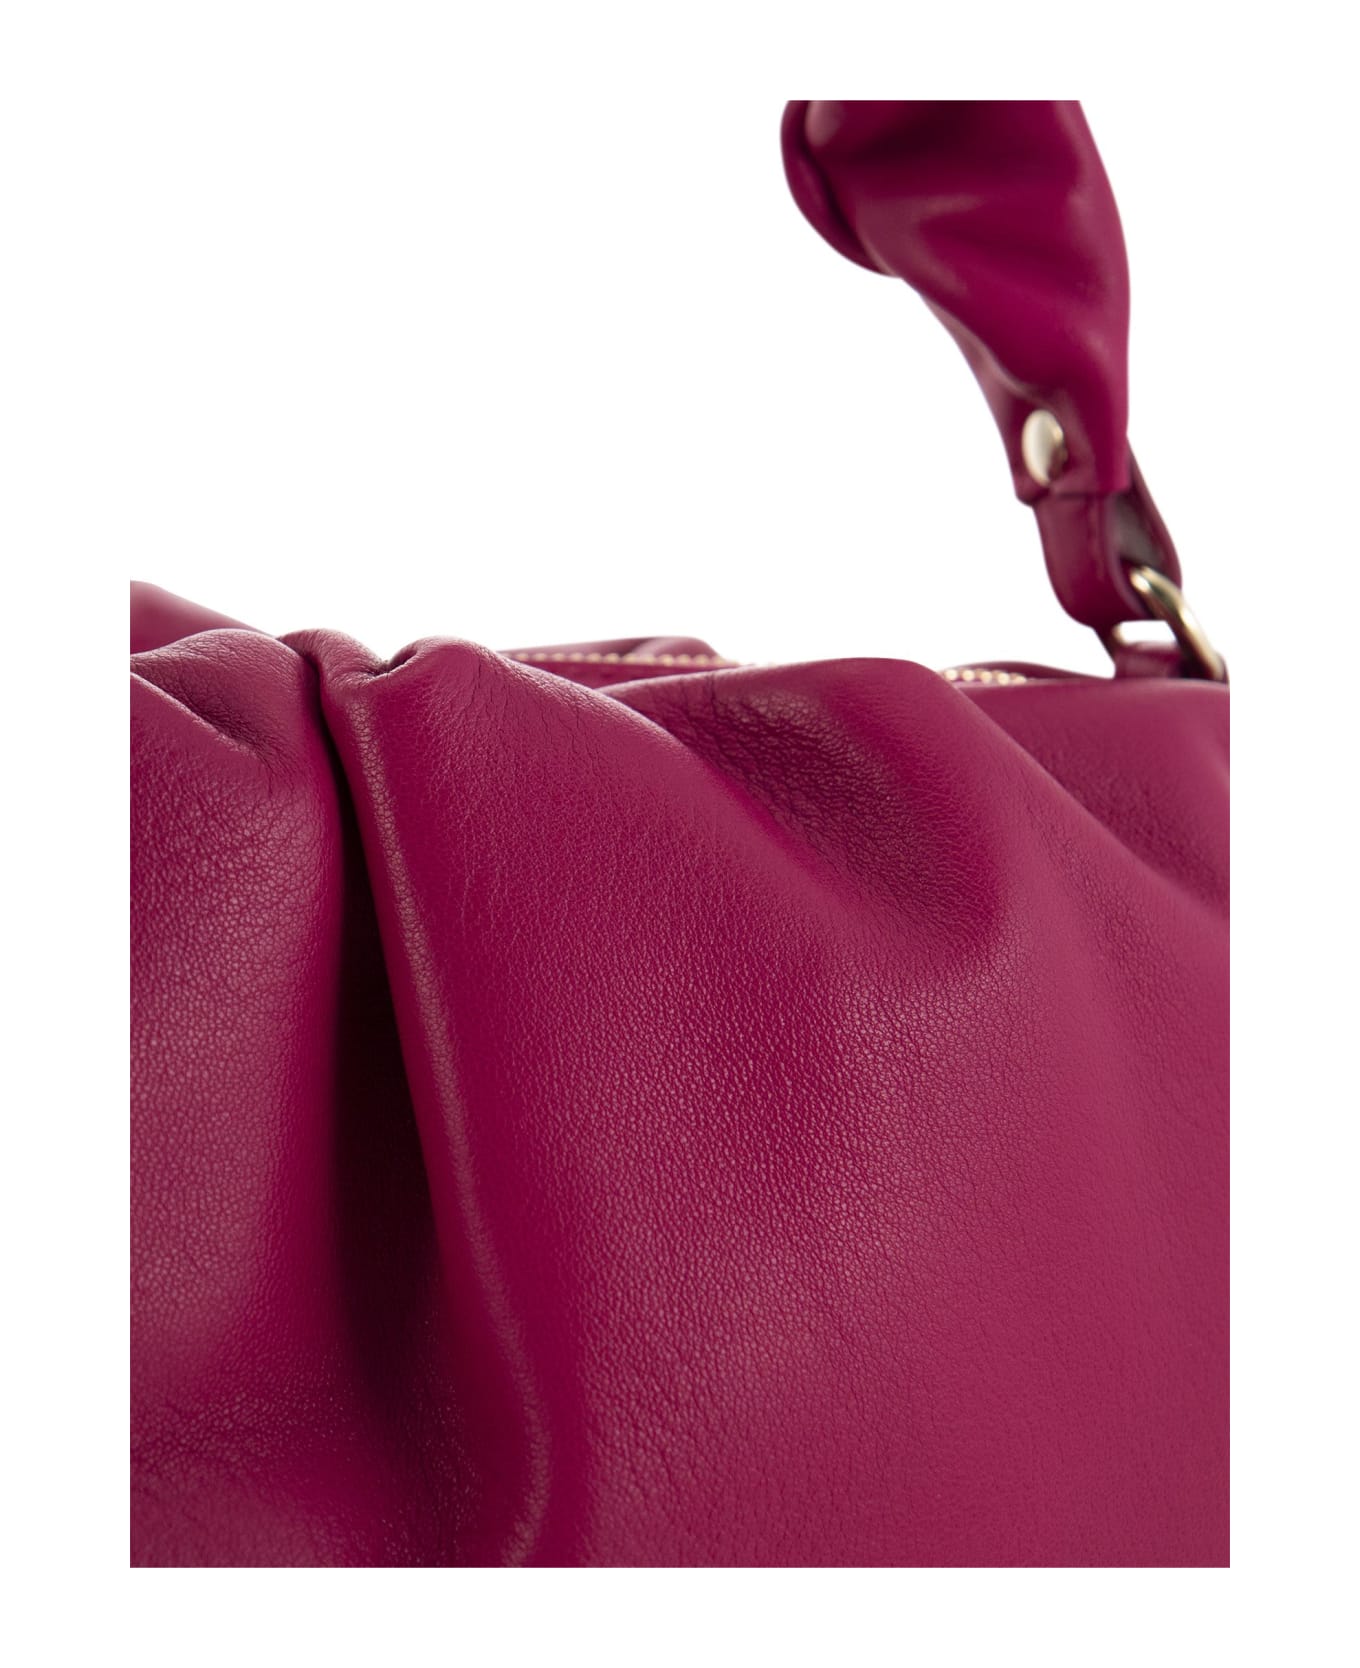 Zanellato Tulipa Heritage - Leather Handbag - Fuxia